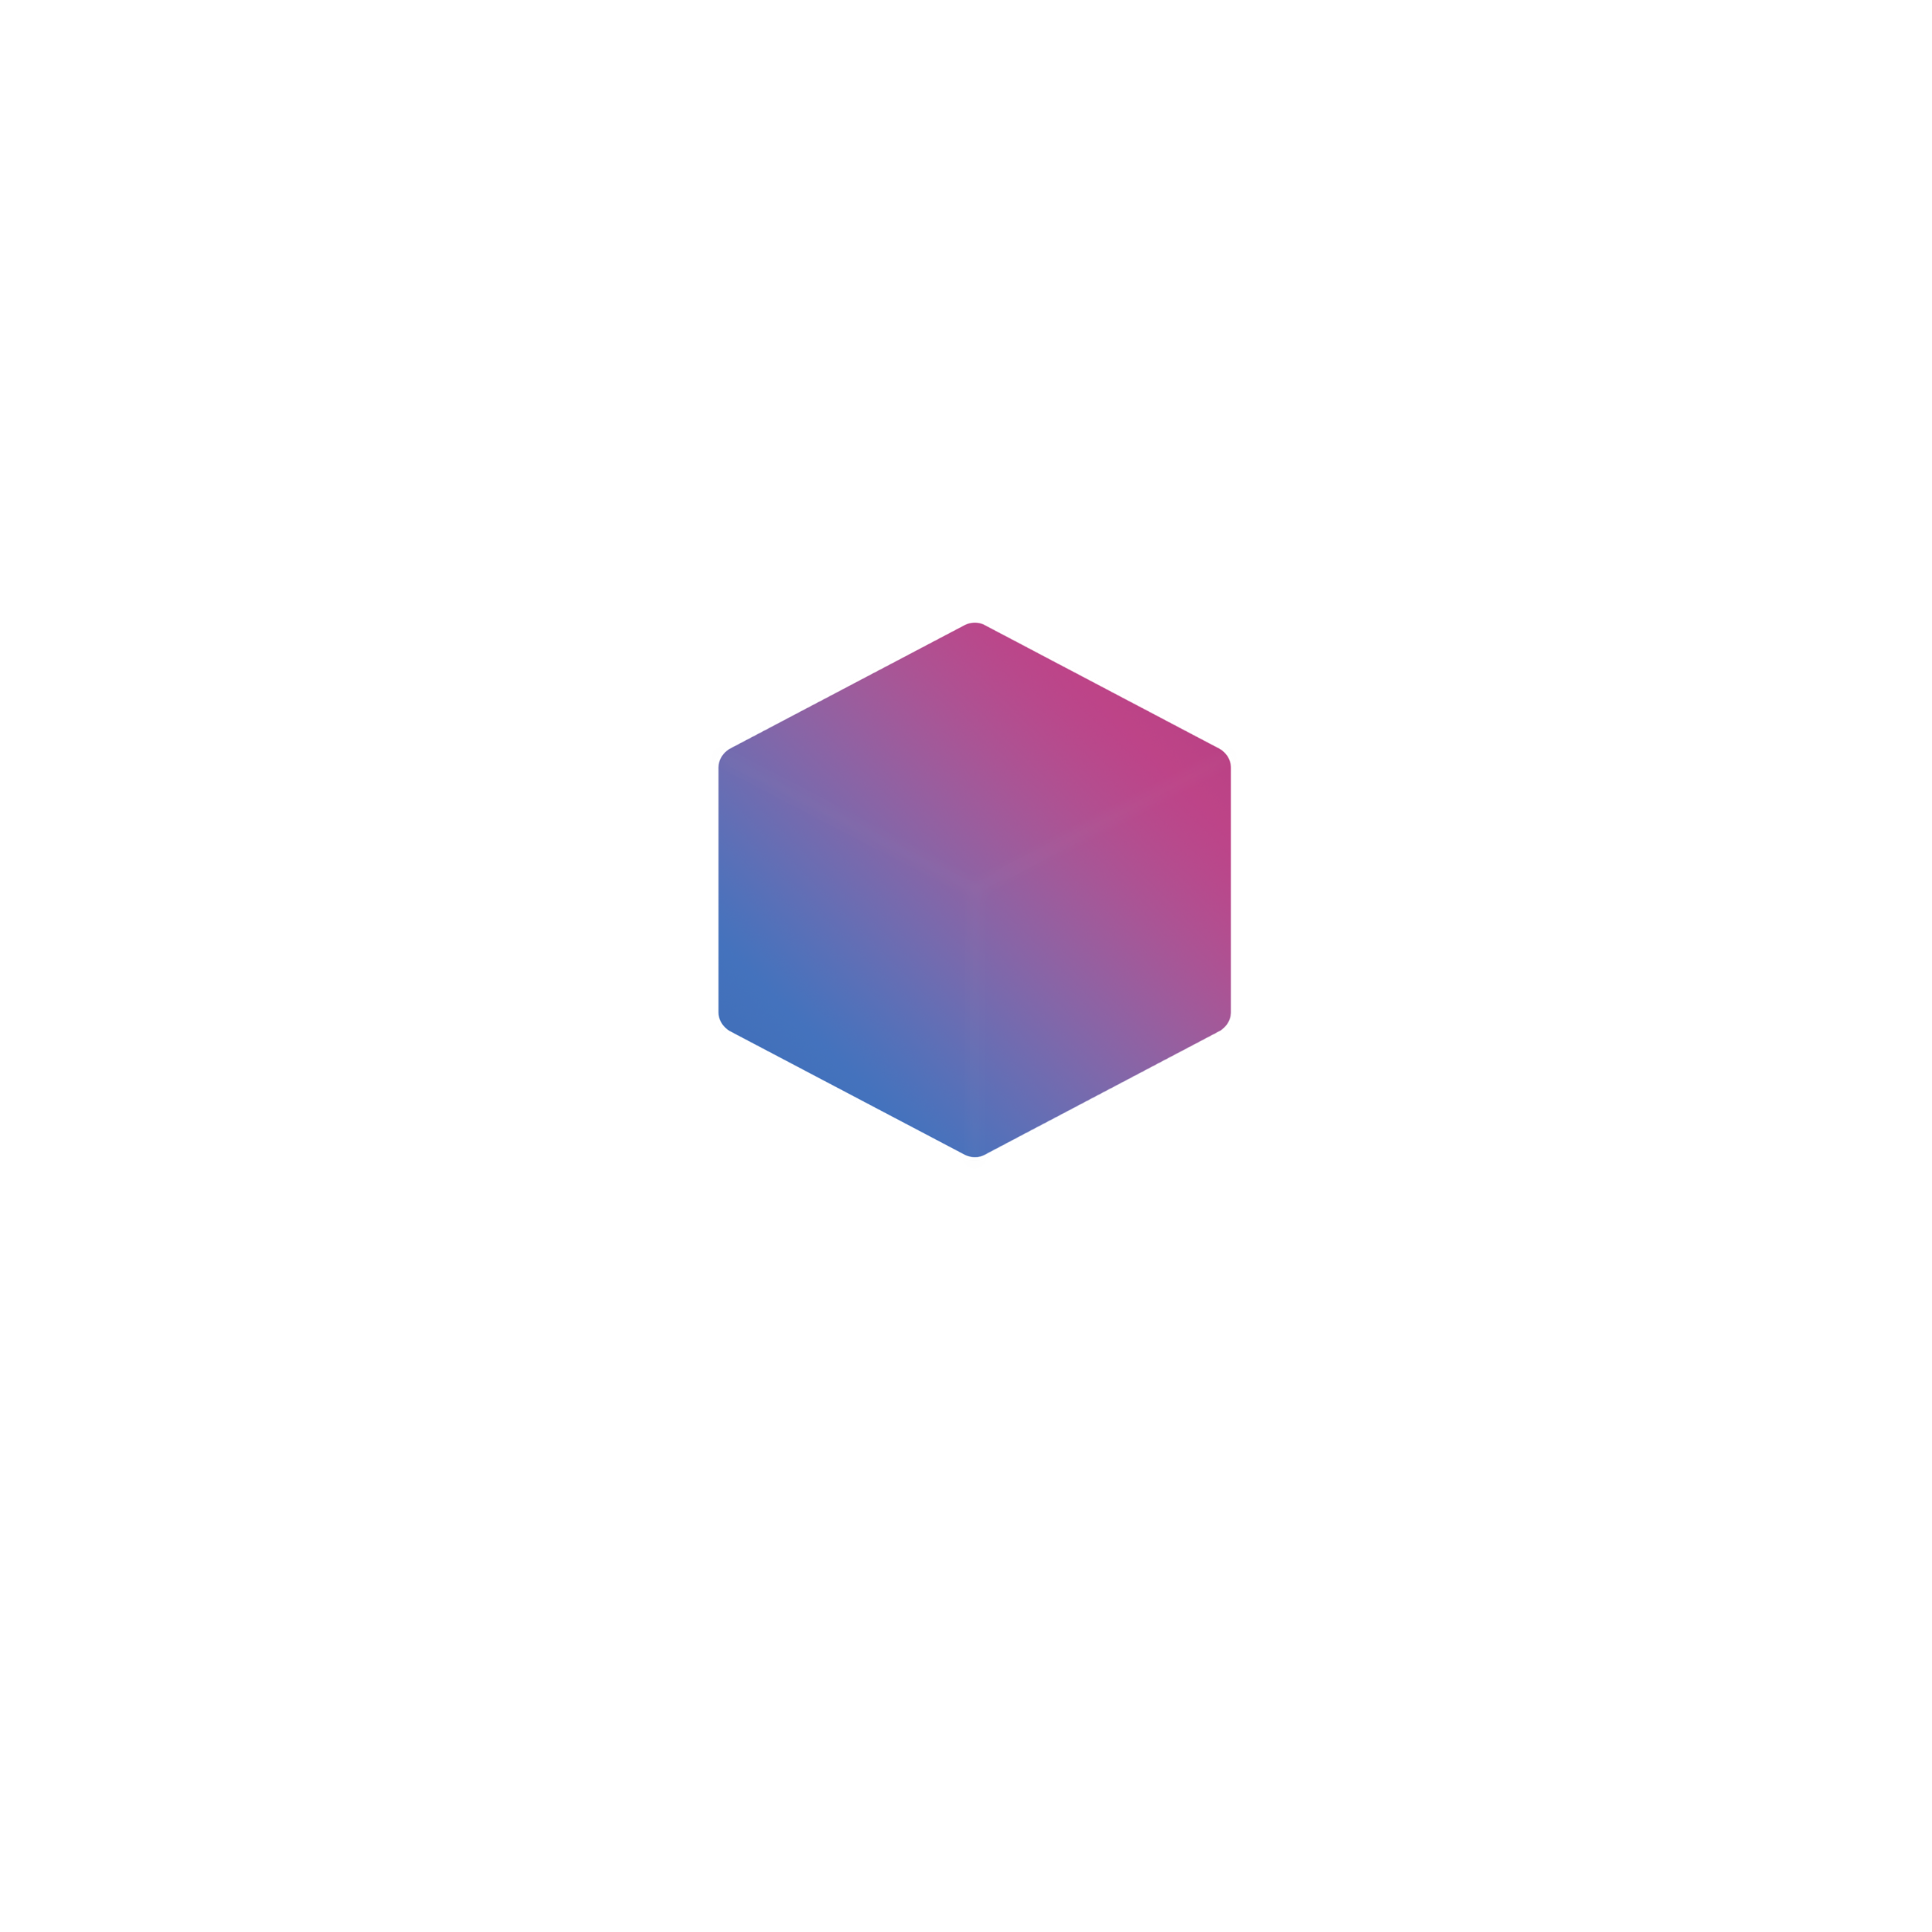 Logo von Beyond Interaction, der Adresse für digitales Design und Webentwicklung in Wien